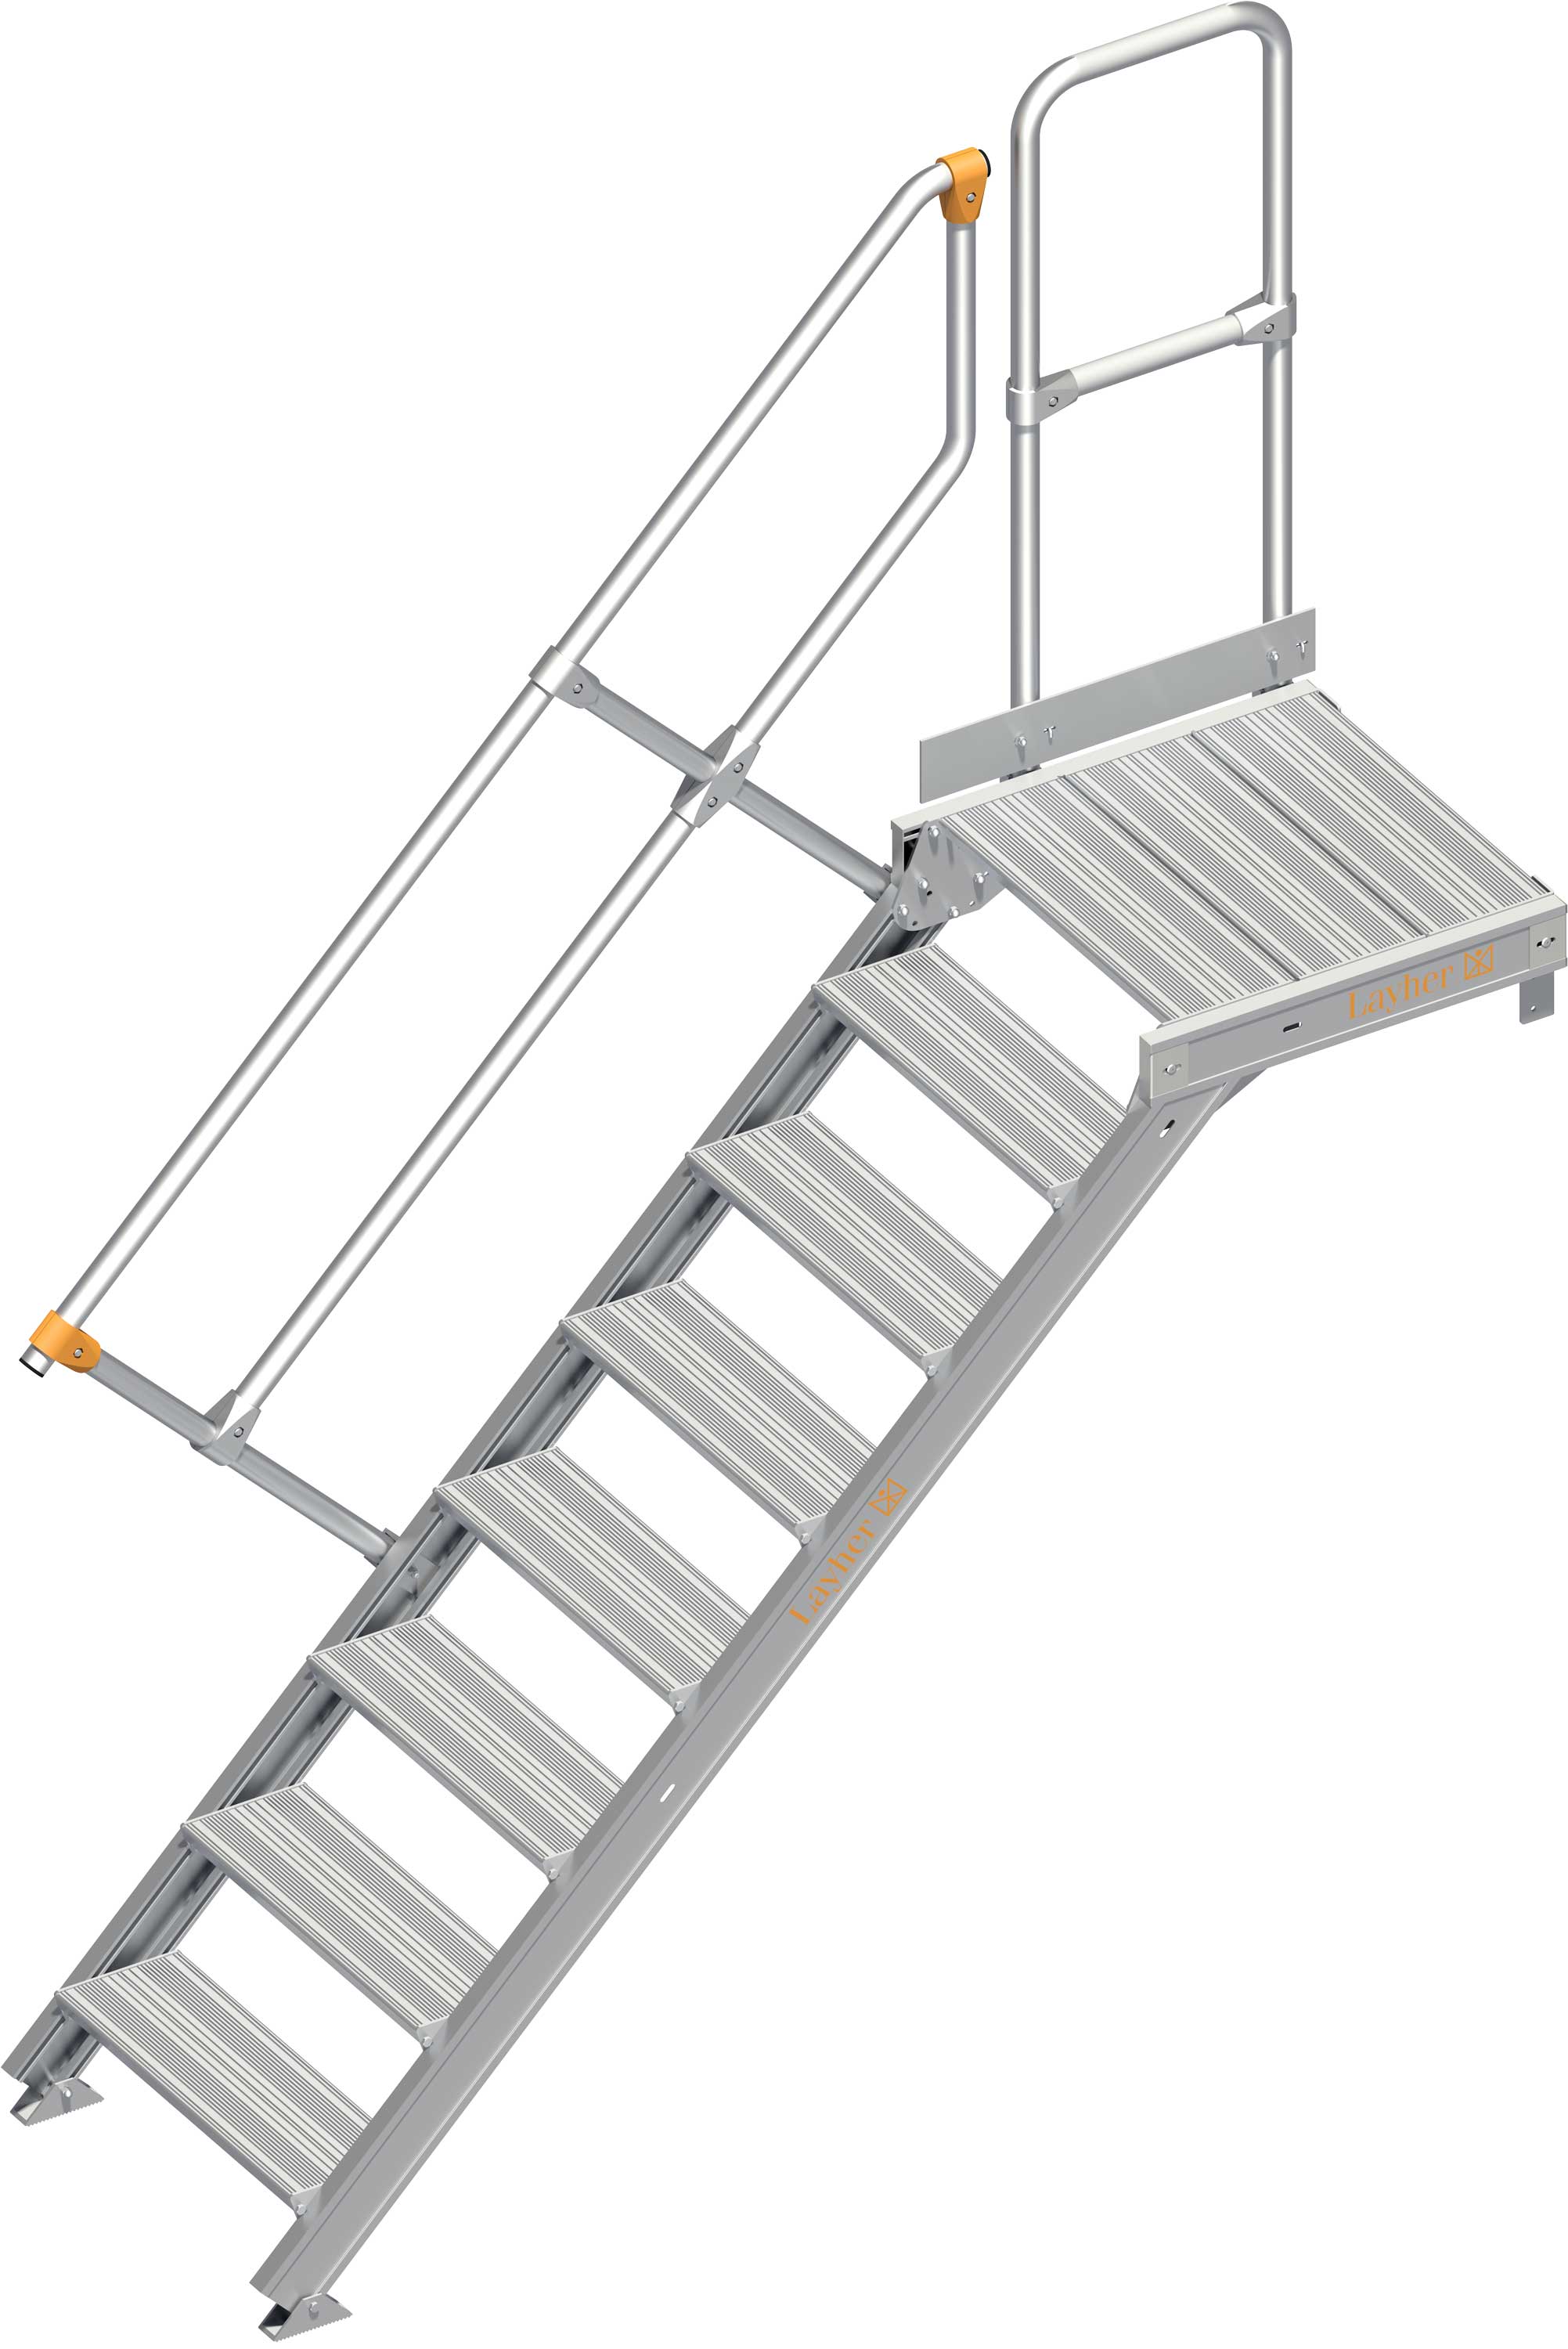 Layher Plattformtreppe 45° 8 Stufen - 600 mm breit